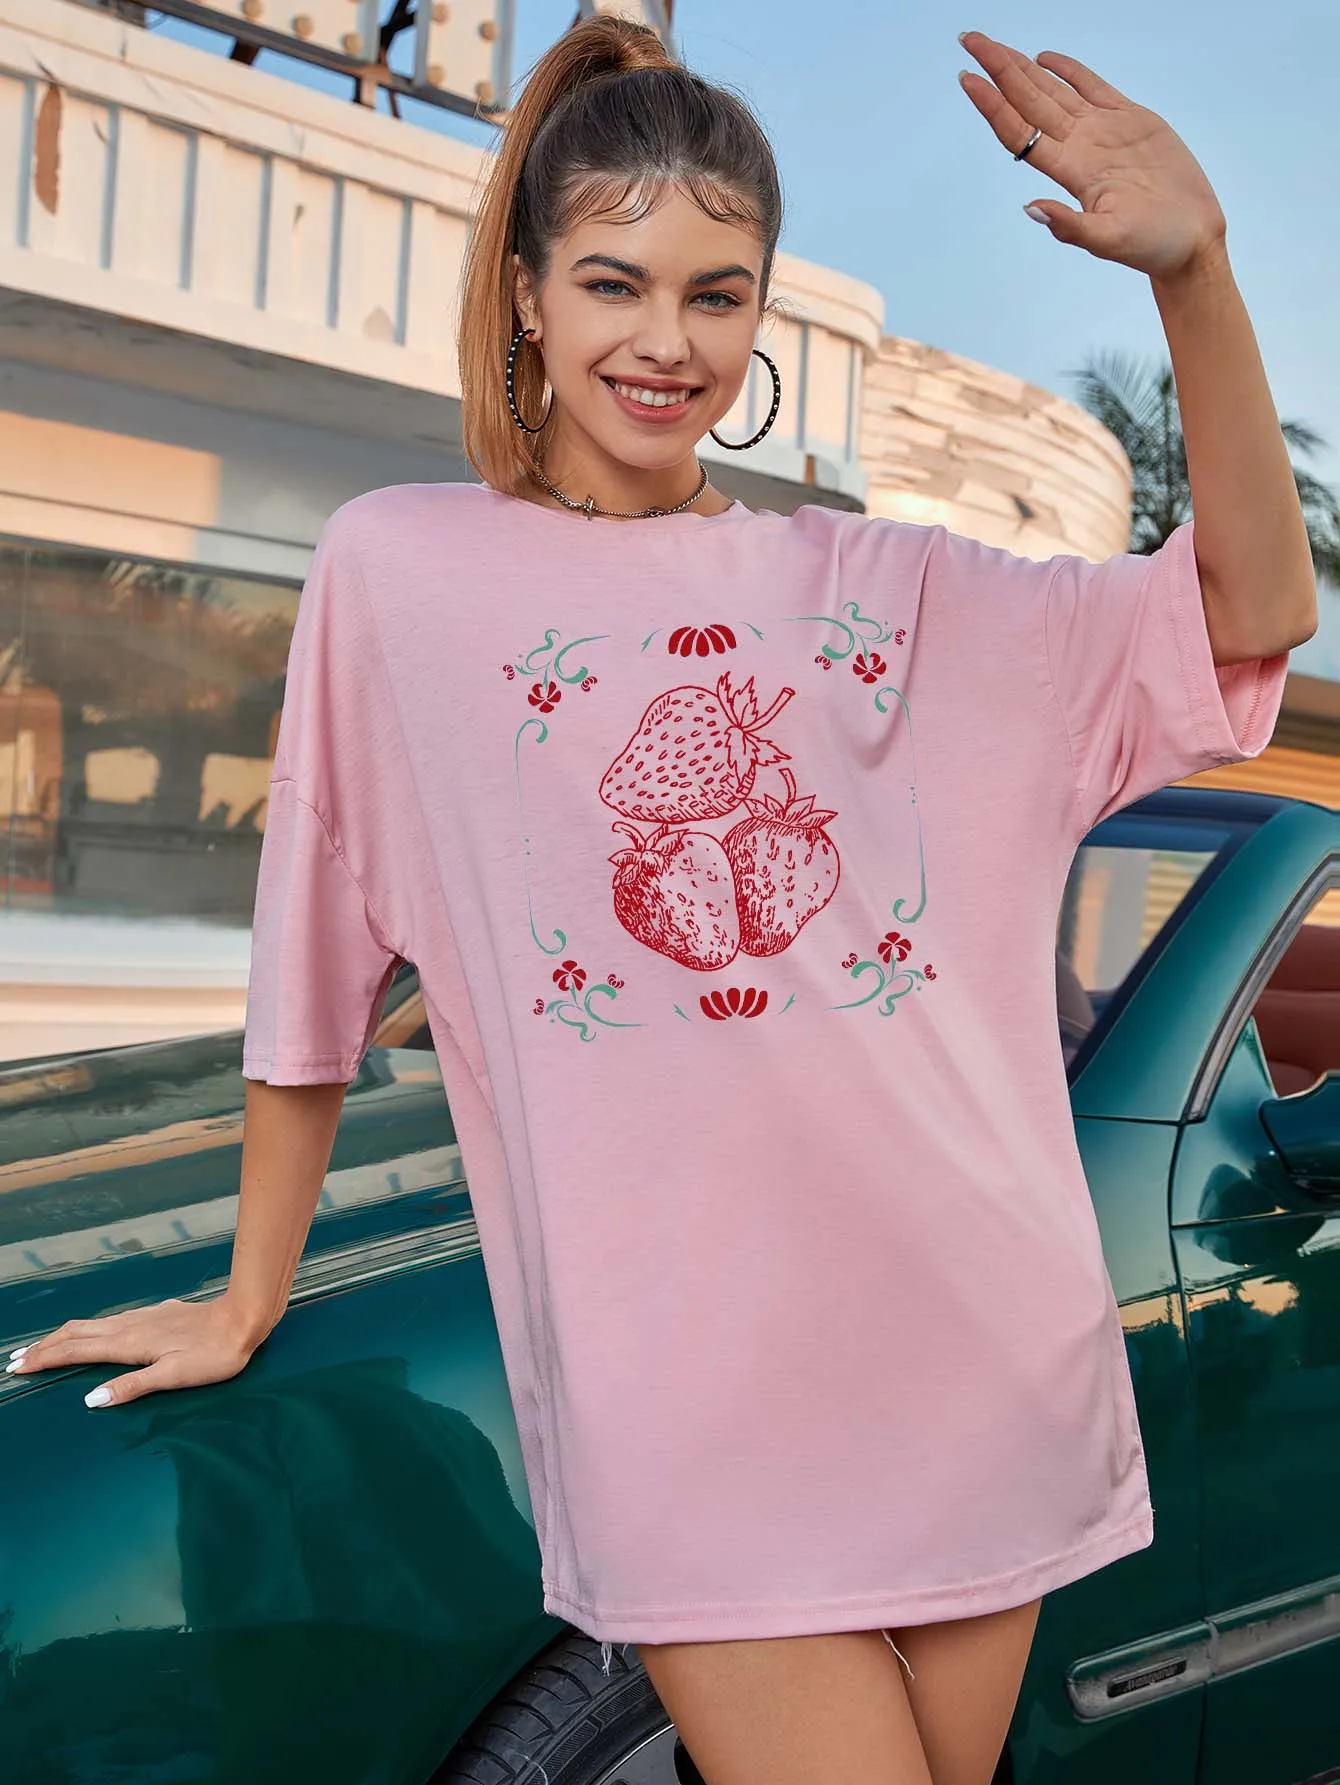 

Рубашка женская оверсайз с рисунком клубники, Модный хлопковый Повседневный милый топ свободного покроя в стиле гранж и tumblr, на лето